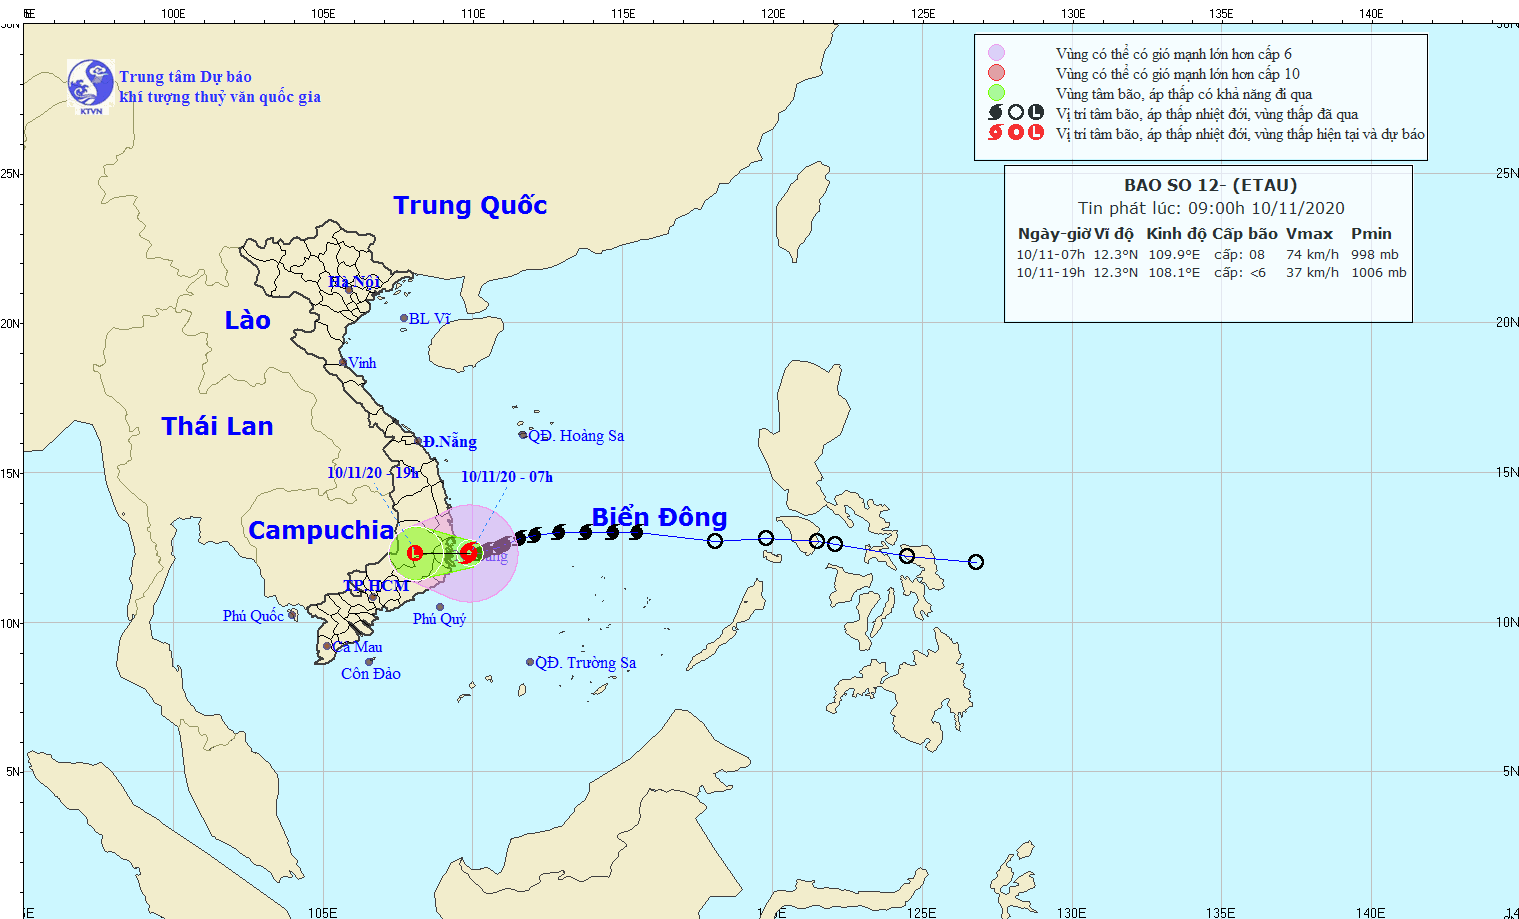 Bão số 12 đang nằm sát đất liền, biển Đông chuẩn bị đón bão số 13 cường độ rất mạnh - Ảnh 1.